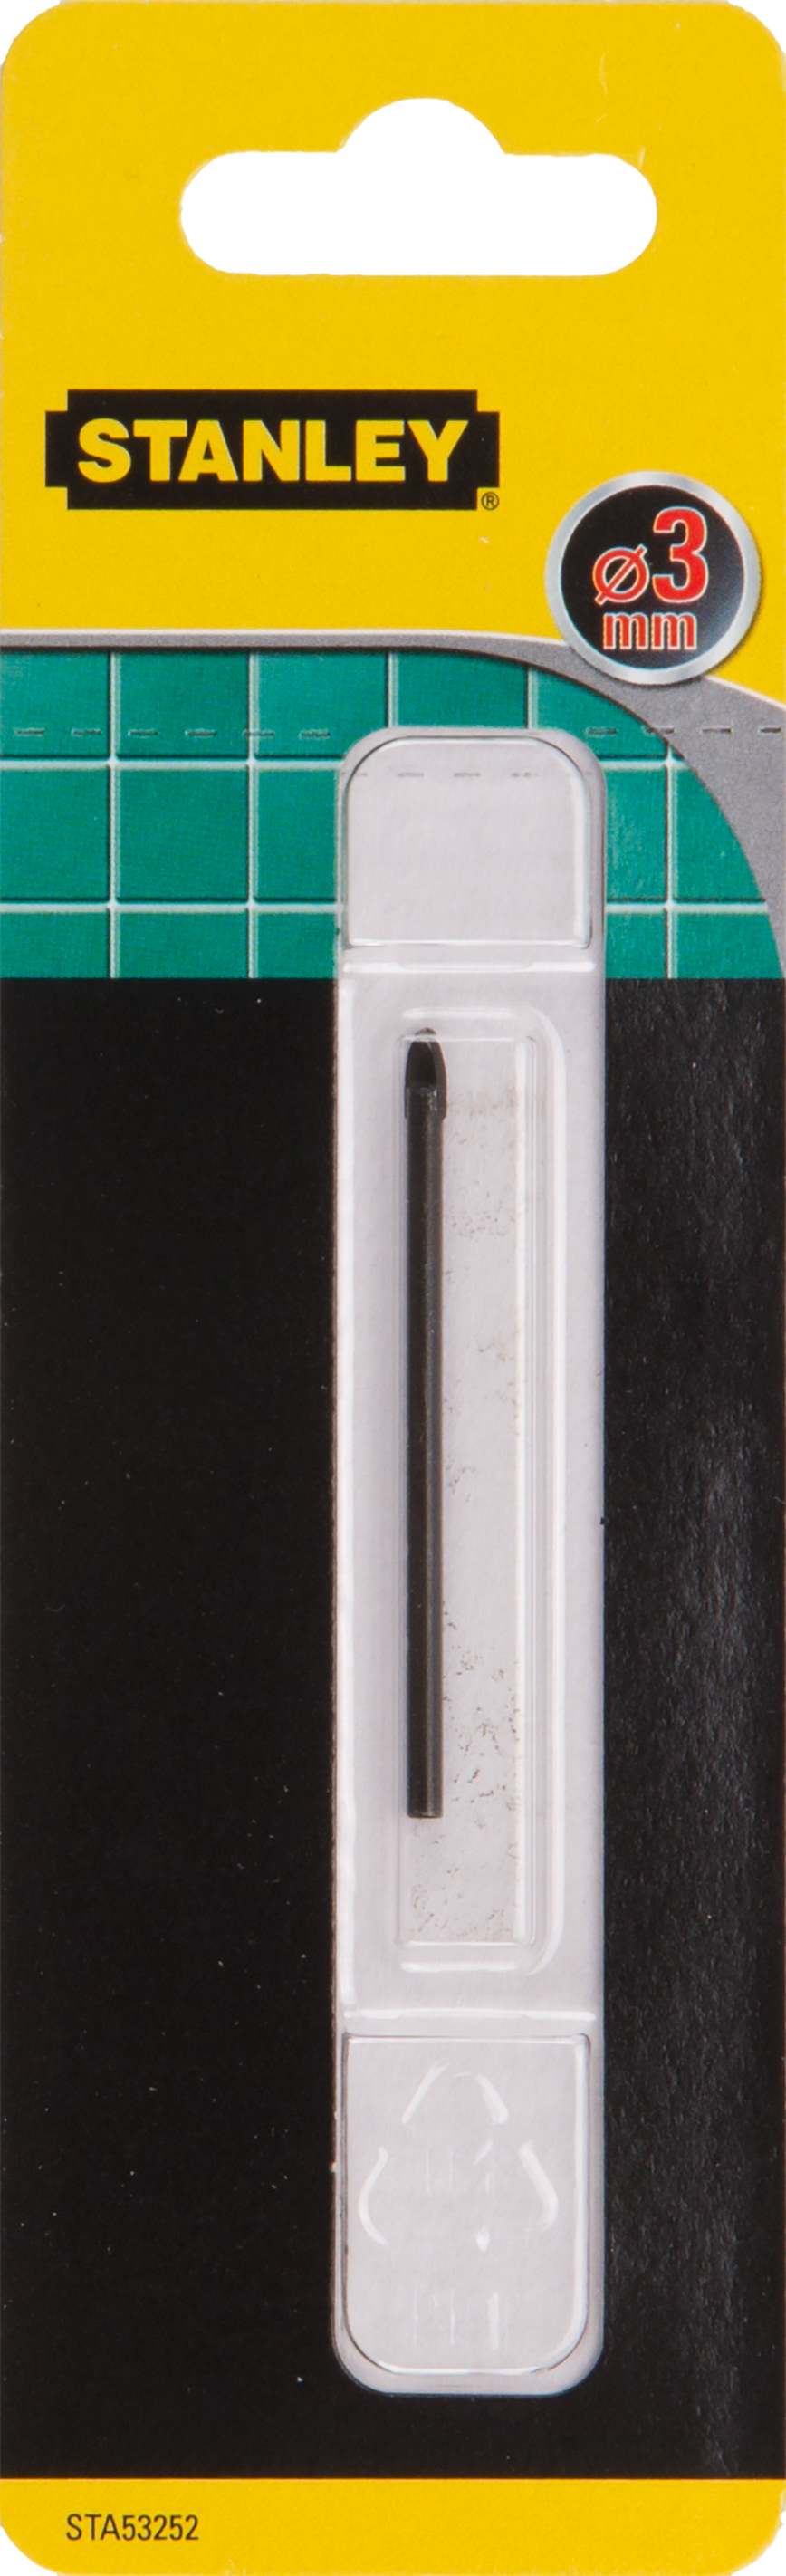 Produkt miniatyrebild Stanley STA53252 Glass-og flisbor